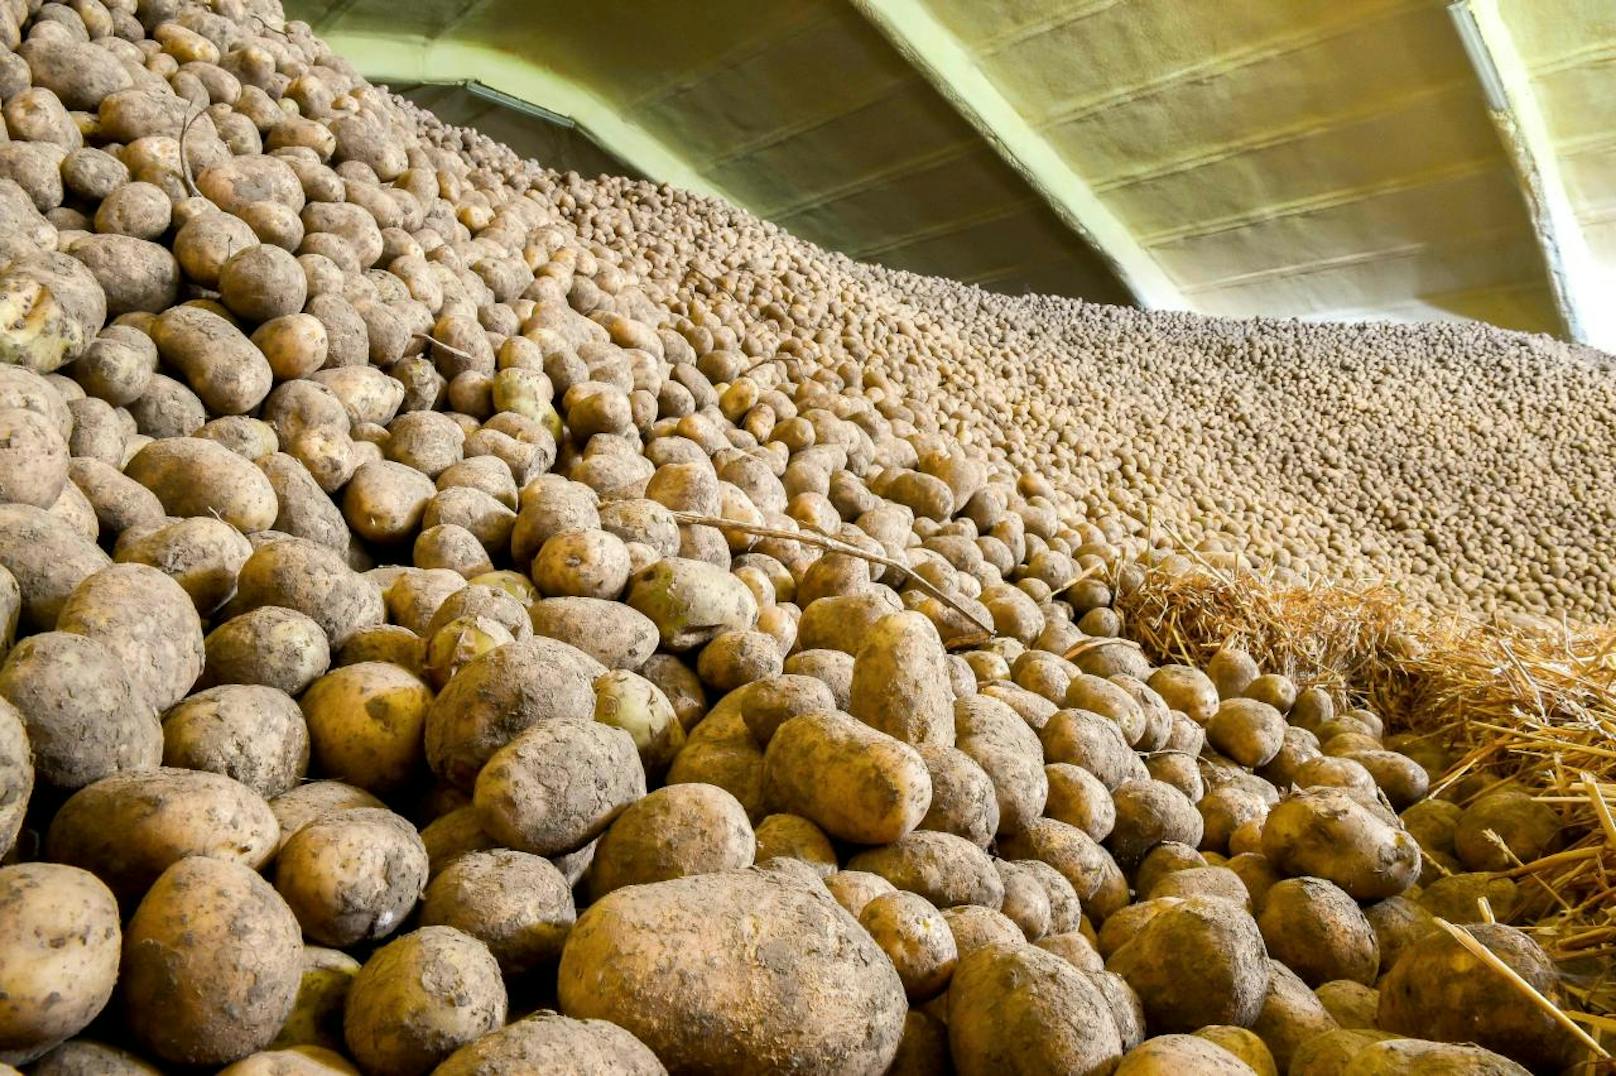 Vor der Entdeckung Amerikas waren Erdäpfel in Europa vollkommen unbekannt. Im Bild: Eine Lagerhalle voller Kartoffeln in Nordfrankreich.